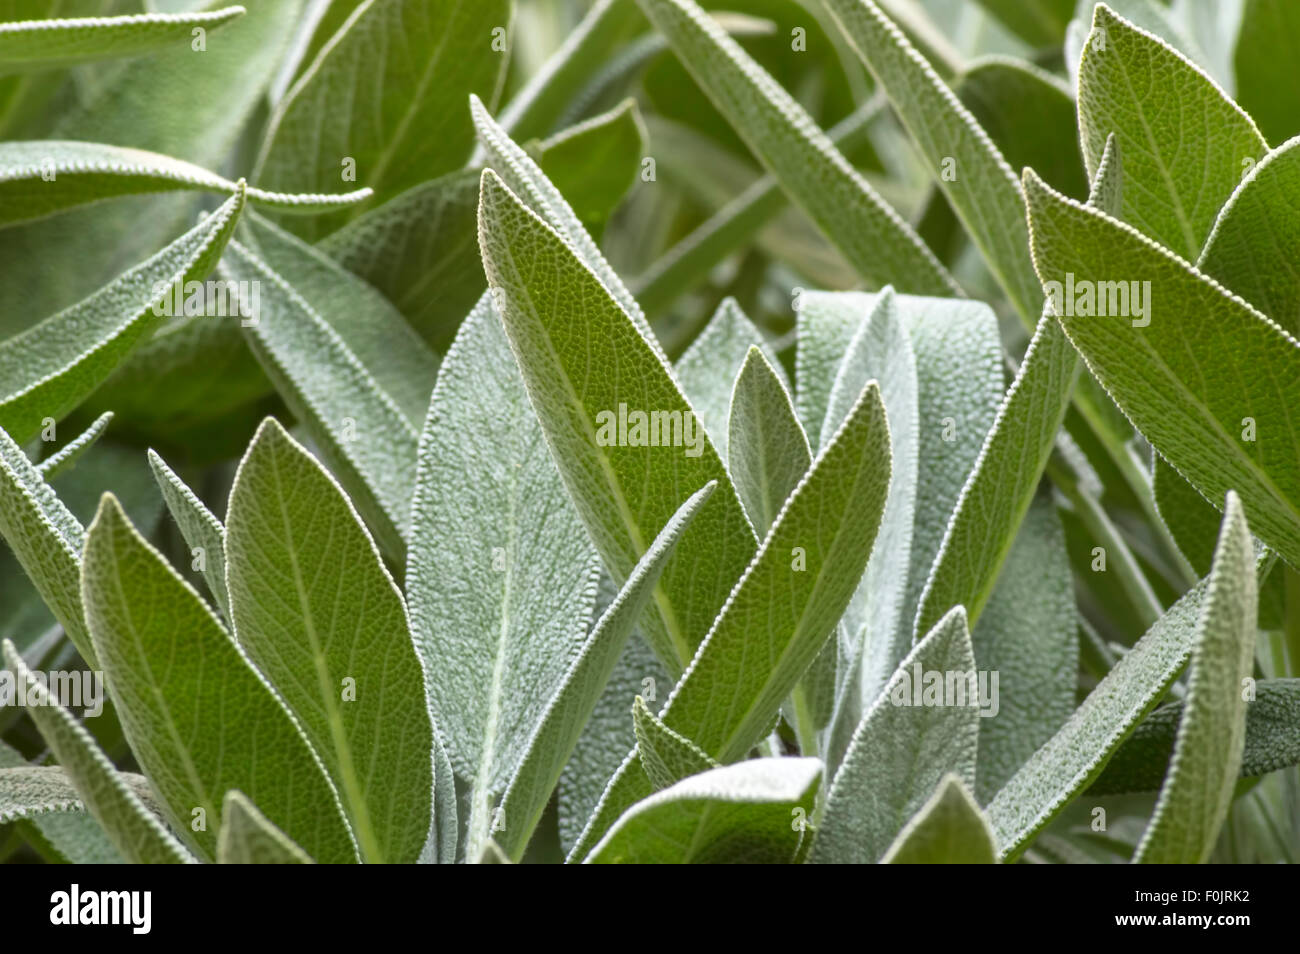 Plante vert sauge (Salvia officinalis), dans le jardin potager. Selective focus Banque D'Images